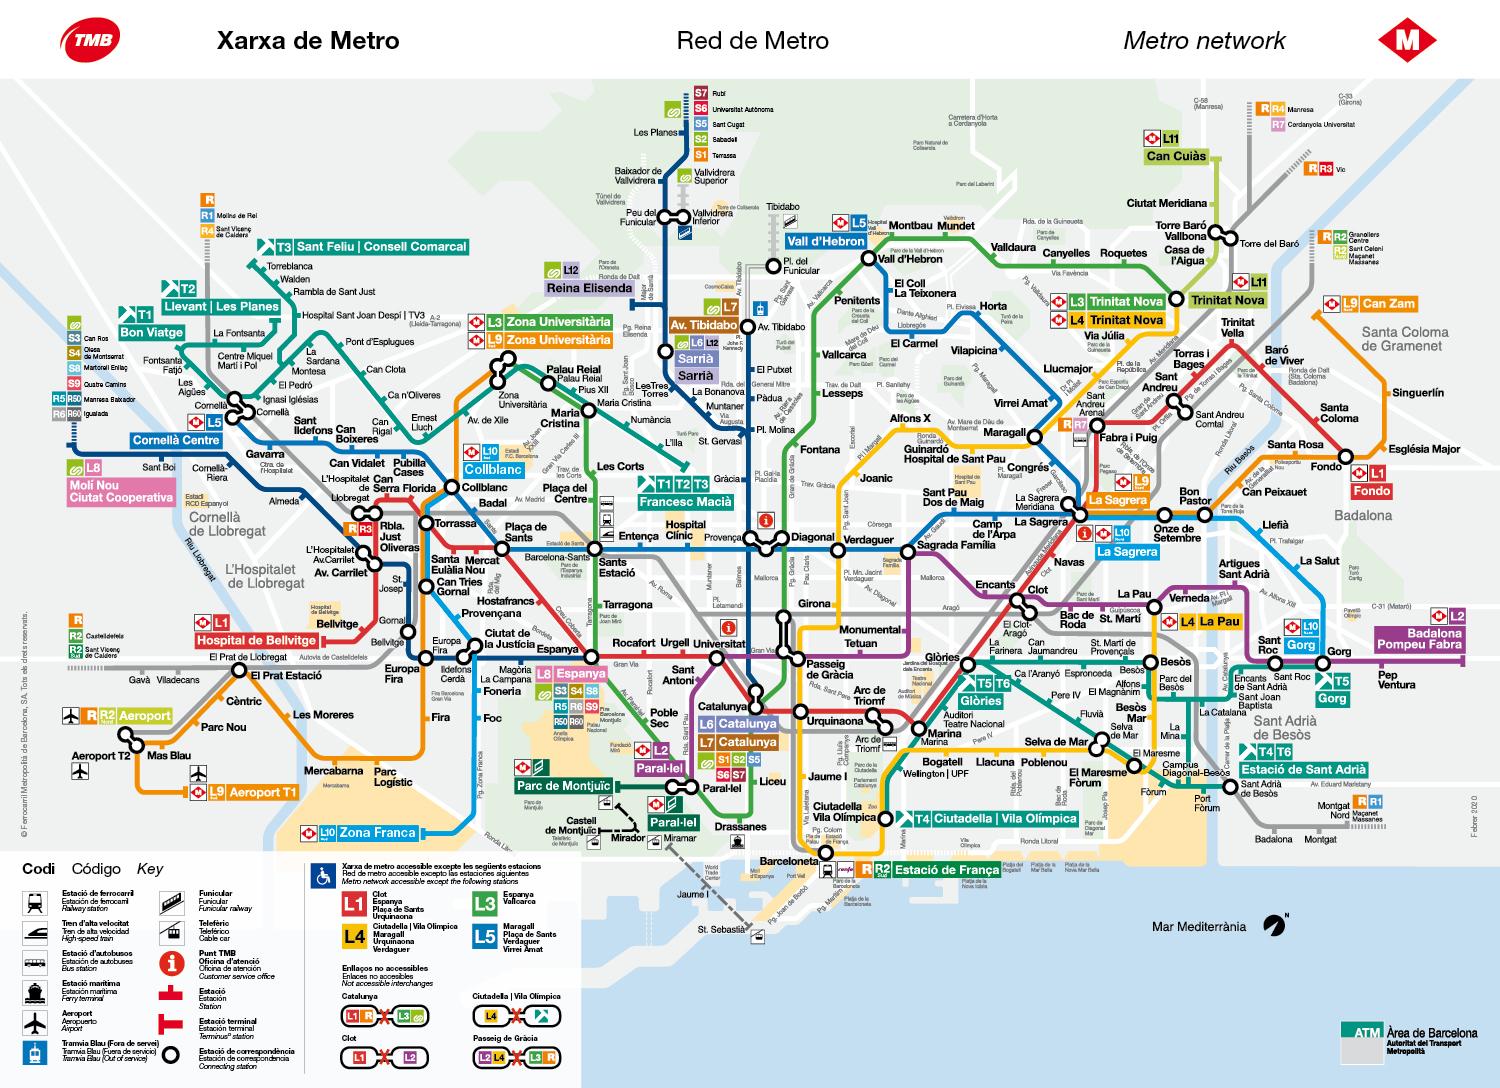 https://maps-barcelona.com/img/0/barcelona-metro-station-map.jpg